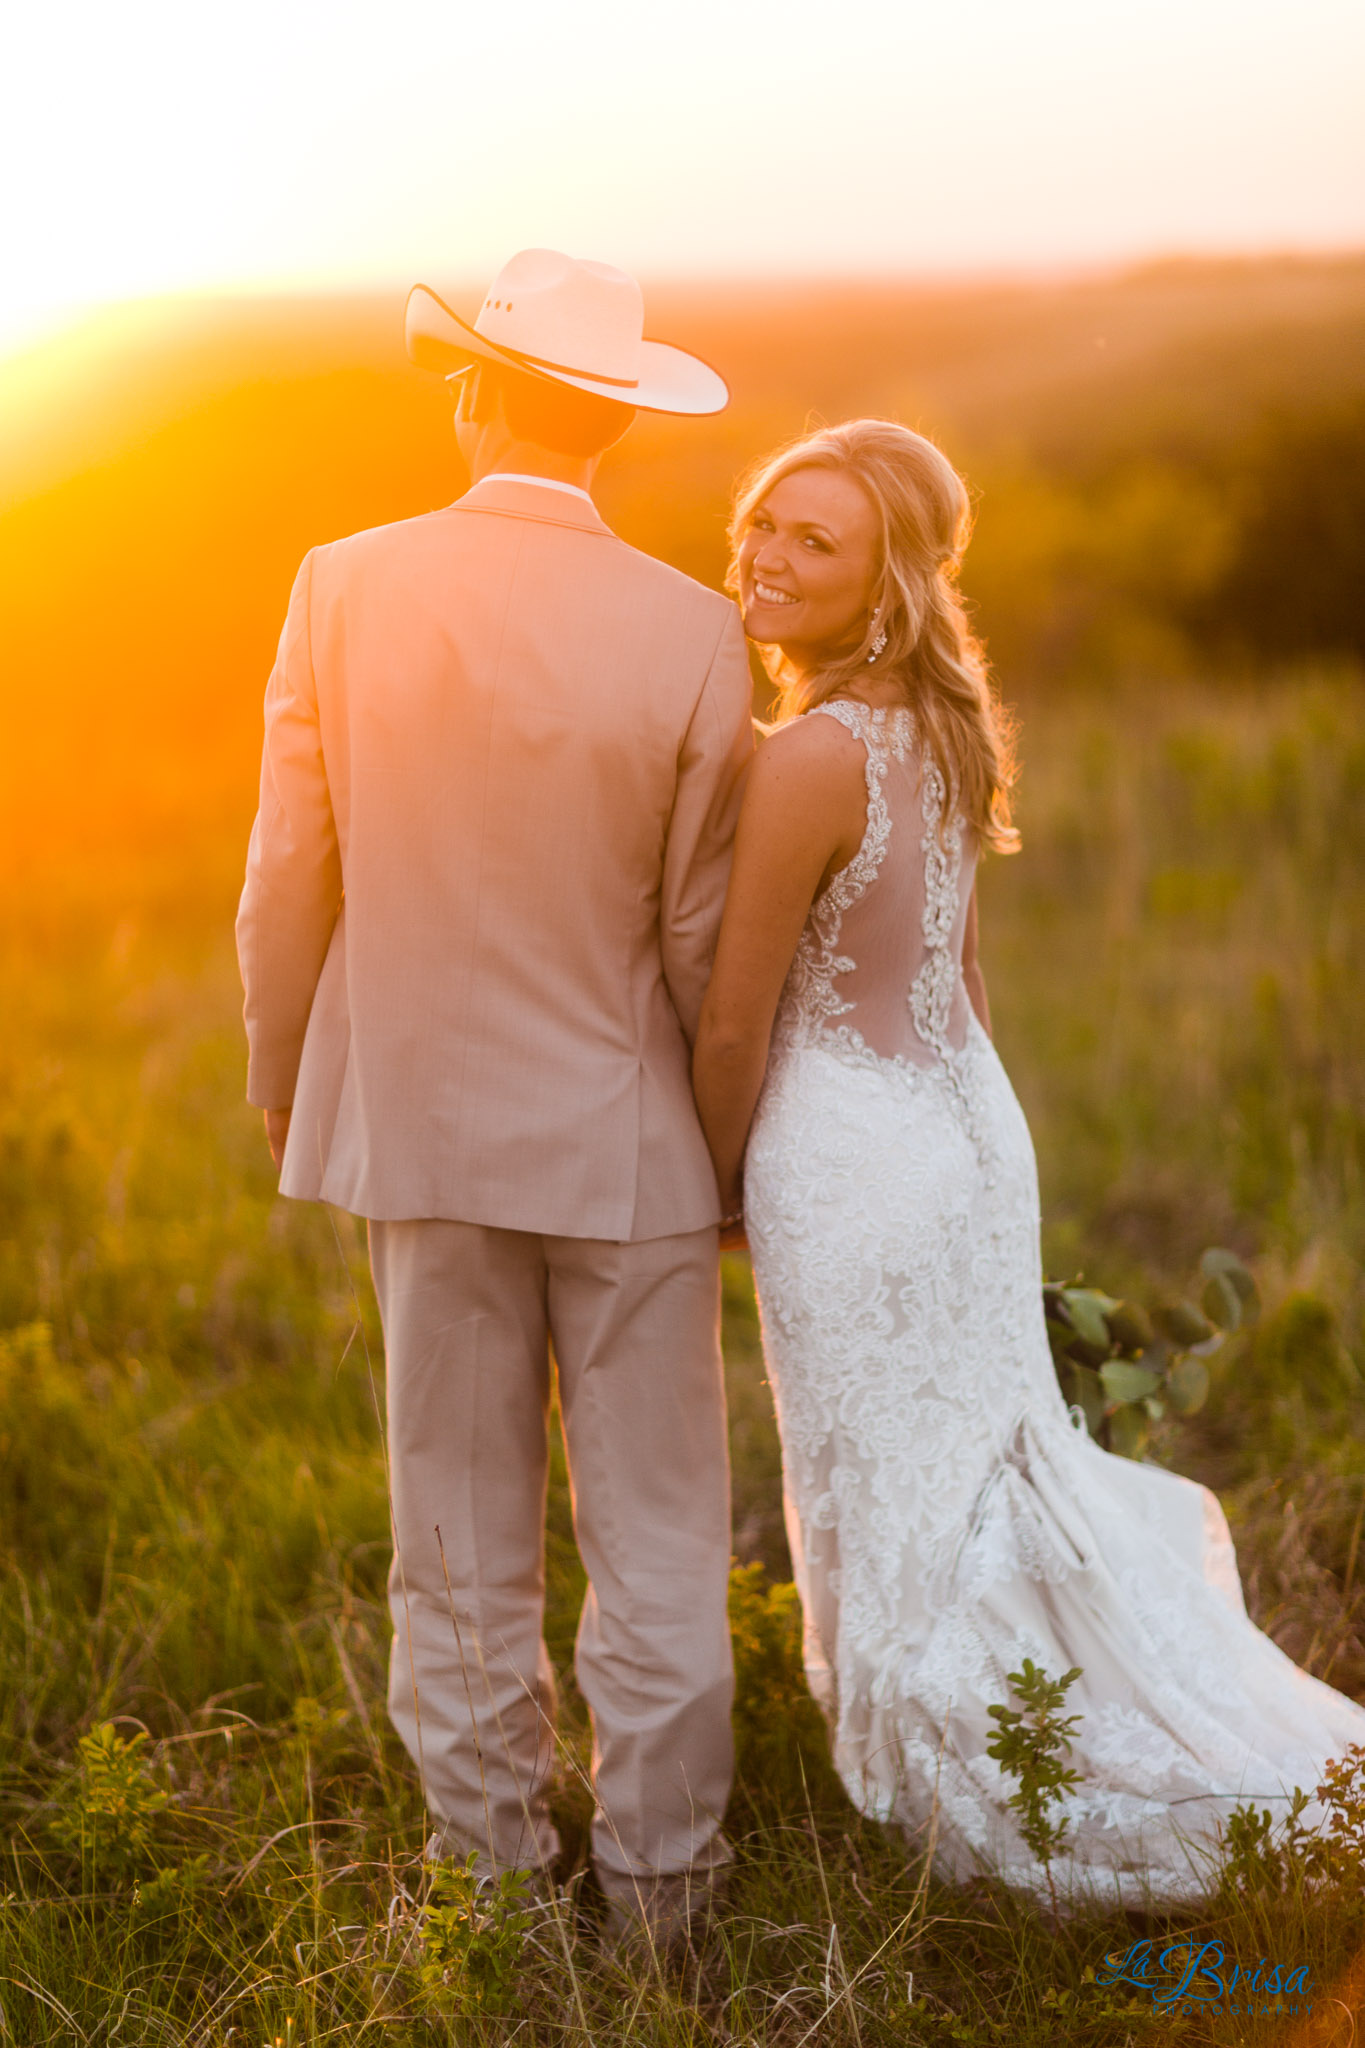 K-177 Overlook Park Country Wedding Bride Looking Over Shoulder Sunset